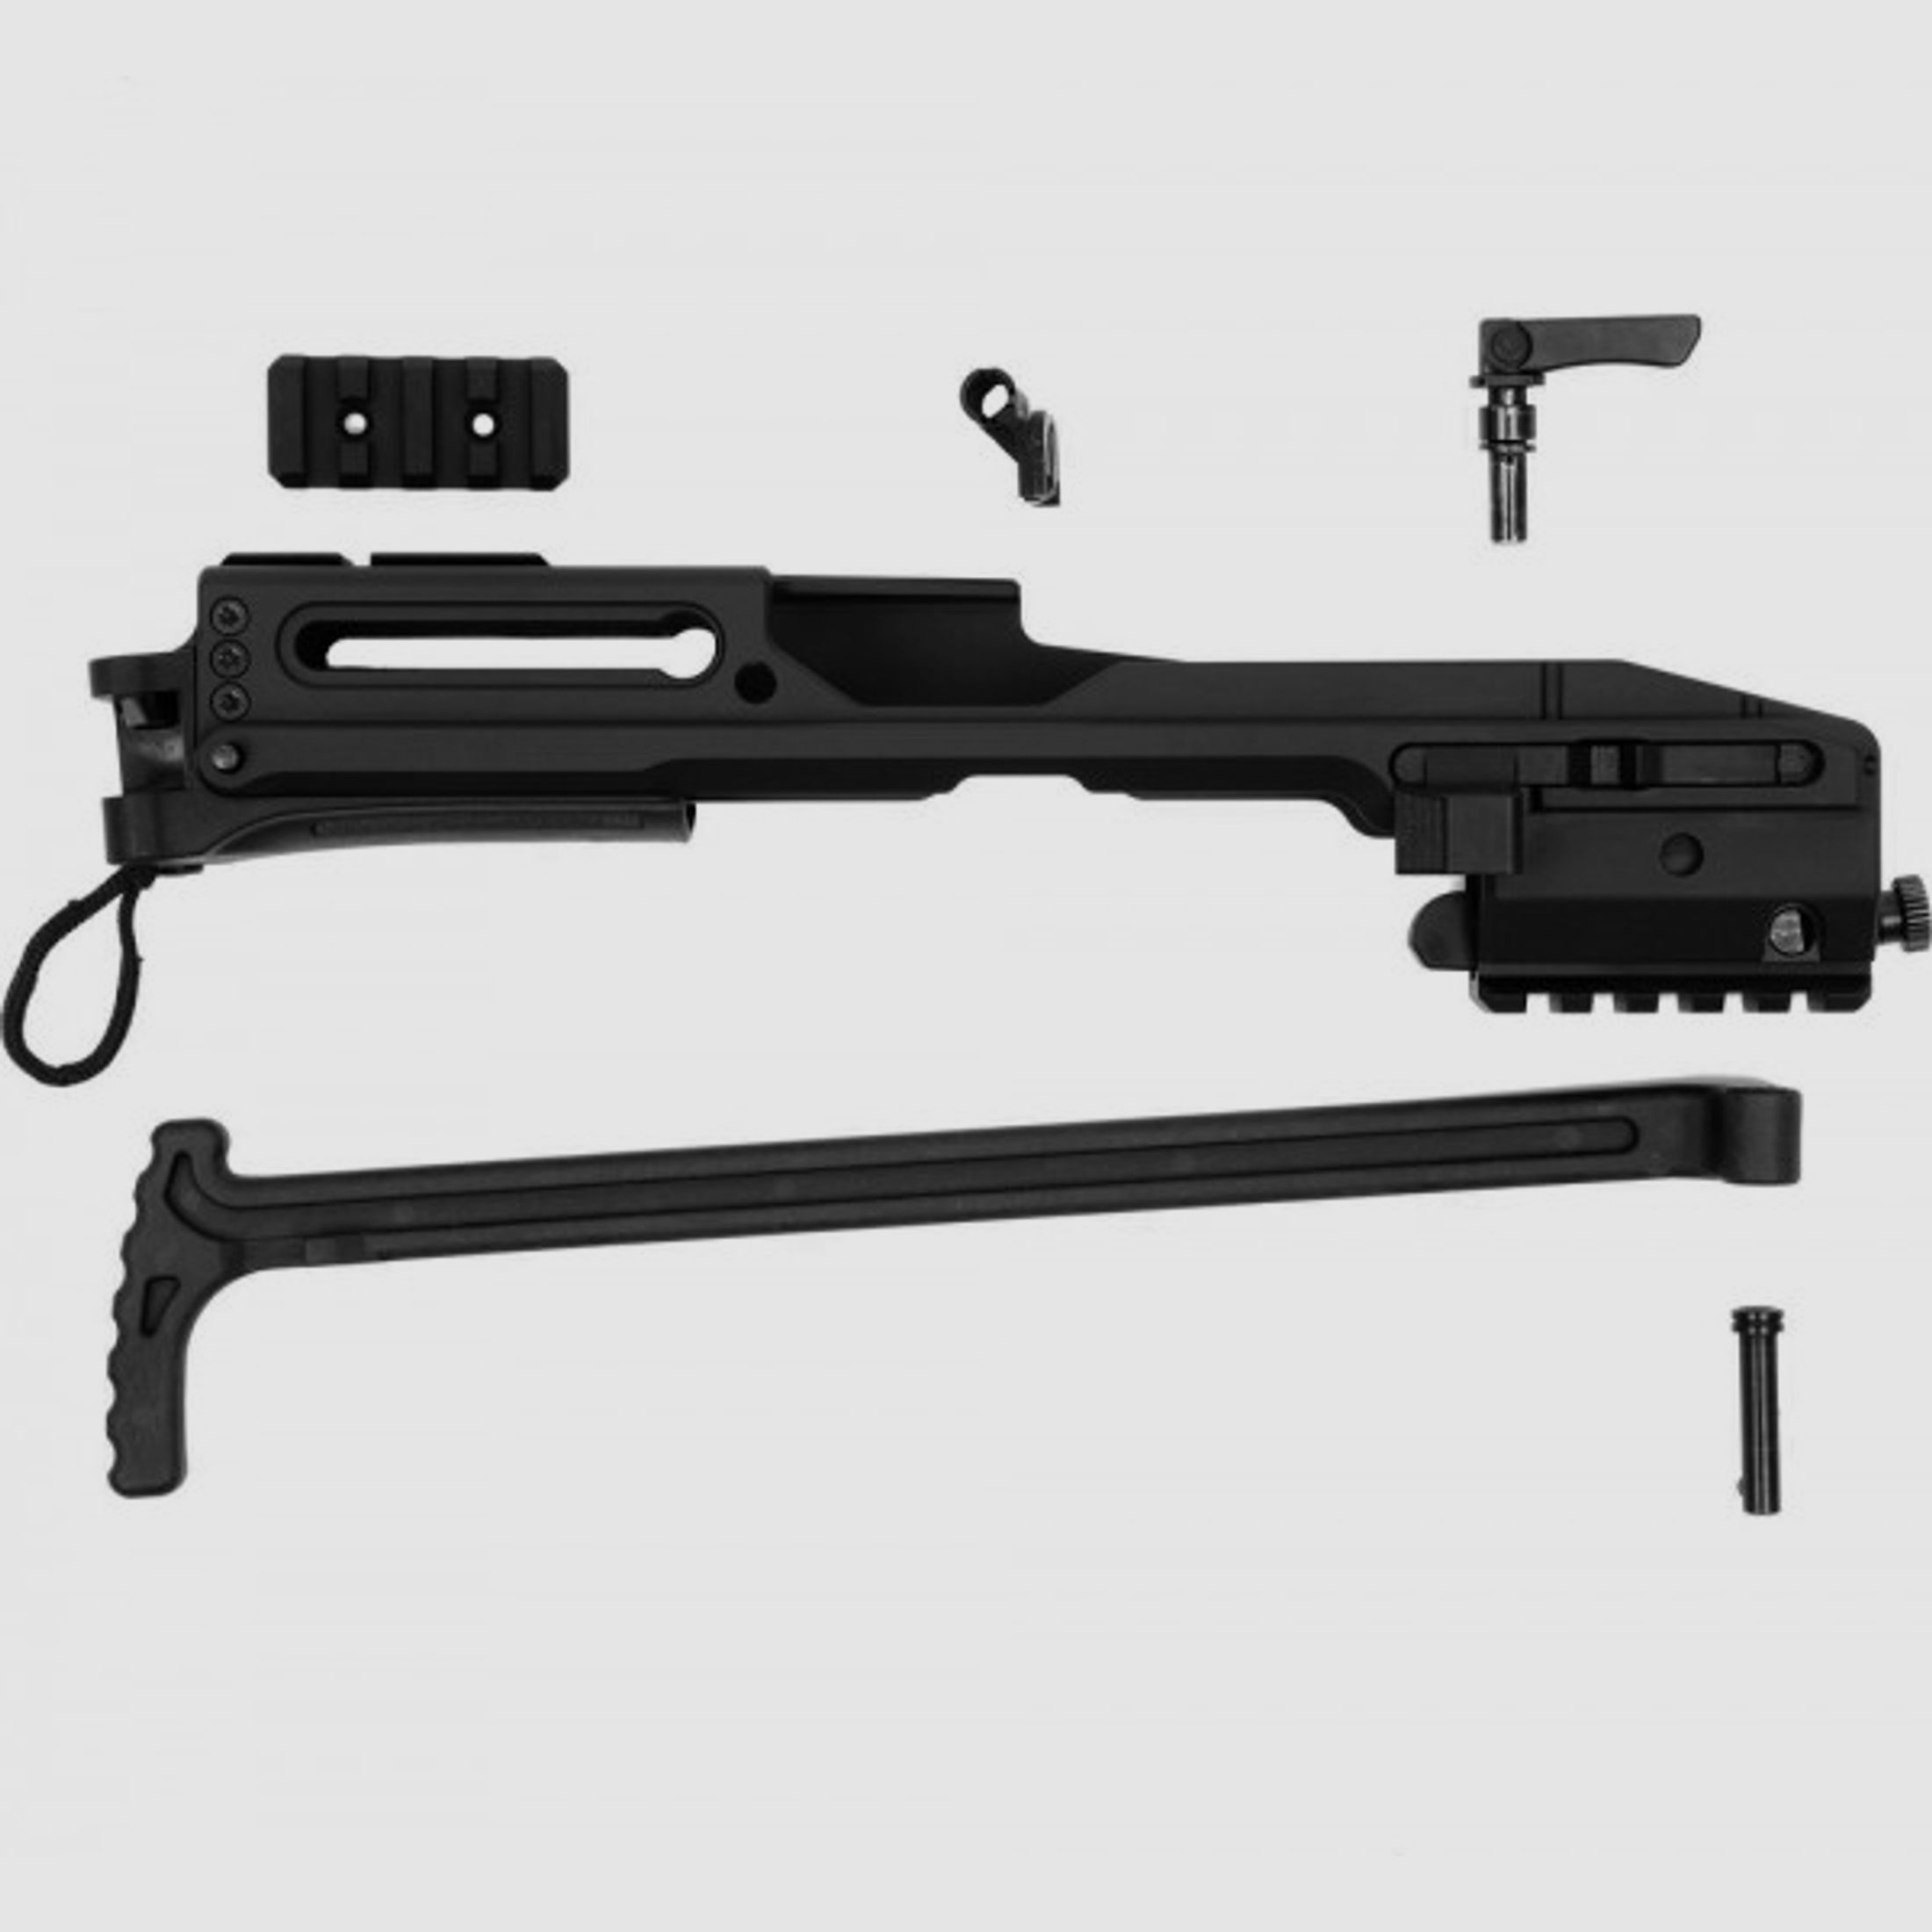 B&T USW-G17 Schaft Kit zu Glock 17 und 19